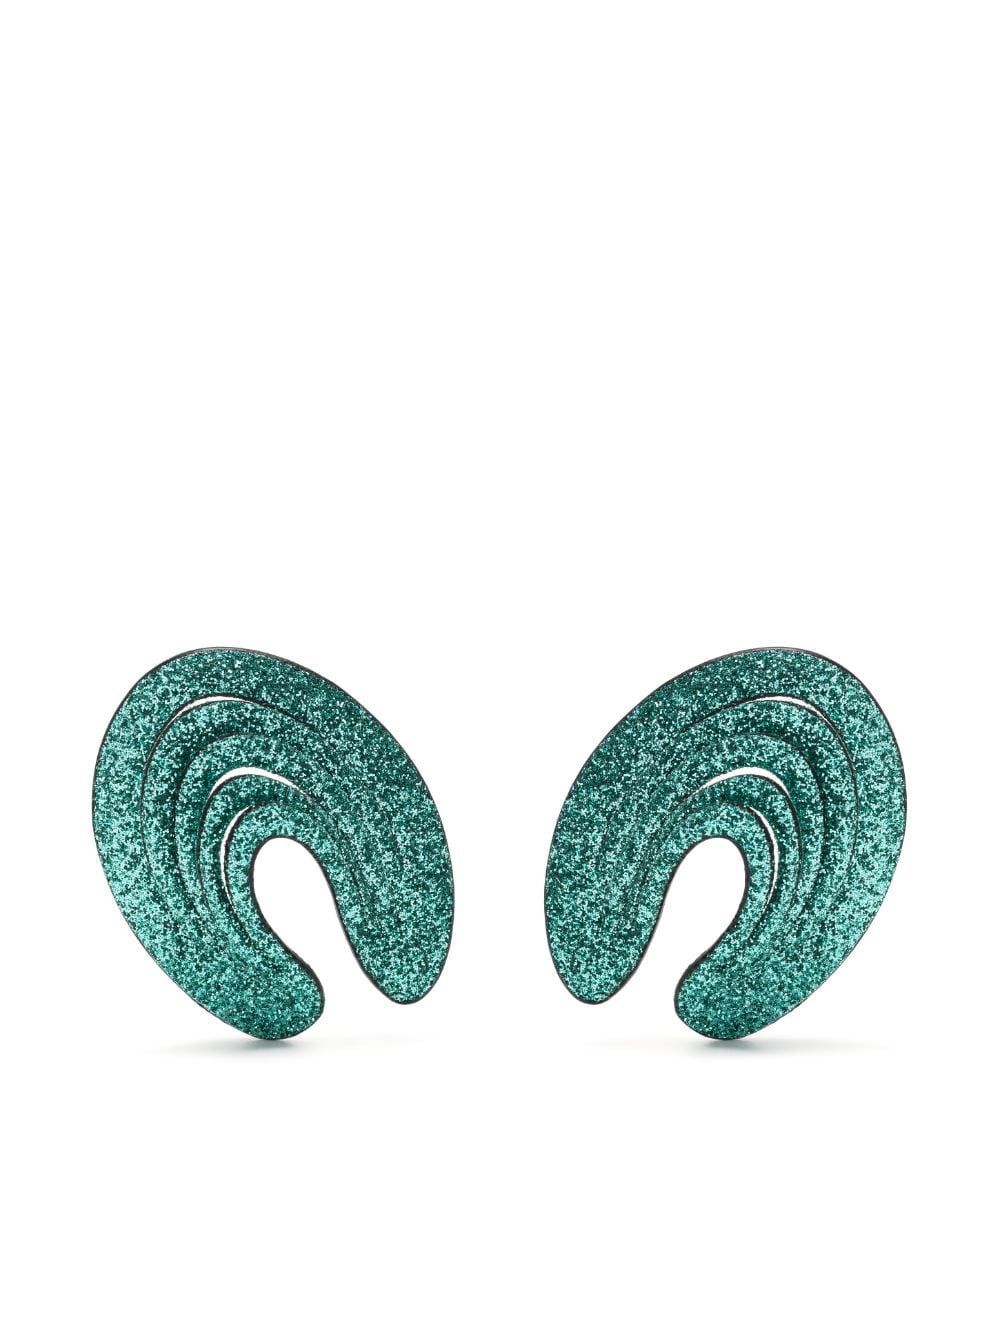 So-le Studio Glitter Spiral Earrings In Green